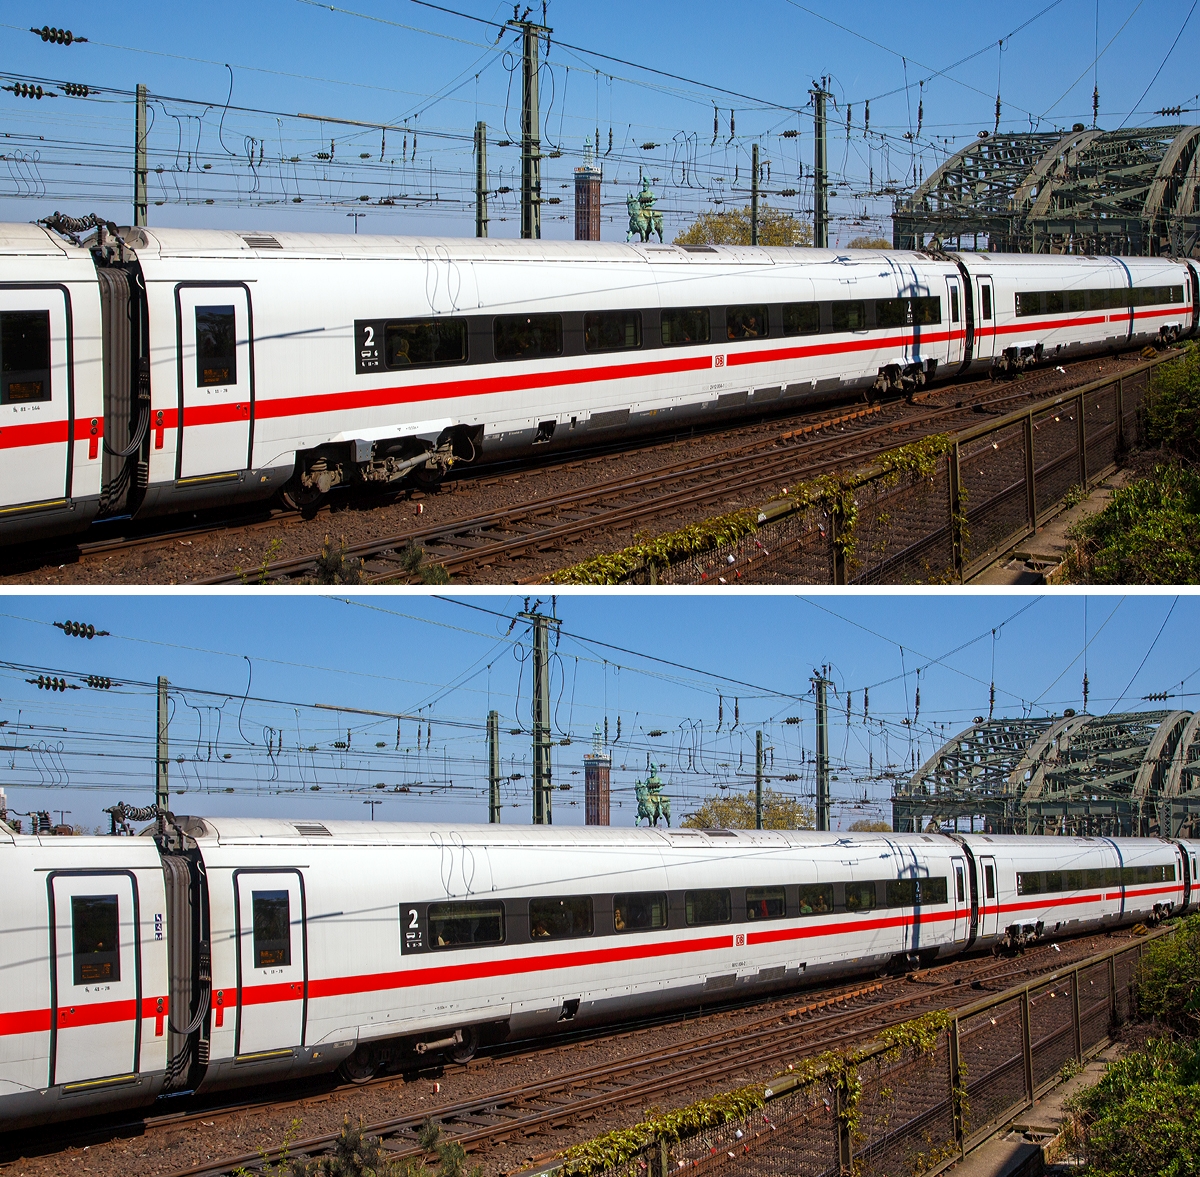 
Bild 4:
Als ICE 610 von München Hbf nach Dortmund Hbf, verlässt der zwölfteilige (Konfiguration K3s) ICE4 Triebzug (Tz) 9004 (93 80 5812 004-0 D-DB ff.) am 21.04.2019 den Hauptbahnhof Köln.

Oben:
Wagen-Nr. 6 – Bpmz angetriebener 2. Klasse Mittelwagen (Powercar) 93 80 2412 004-1 D-DB.
Unten:
Wagen-Nr. 7 – Bpmz antriebsloser 2. Klasse Mittelwagen 93 80 9812 004-2 D-DB.
